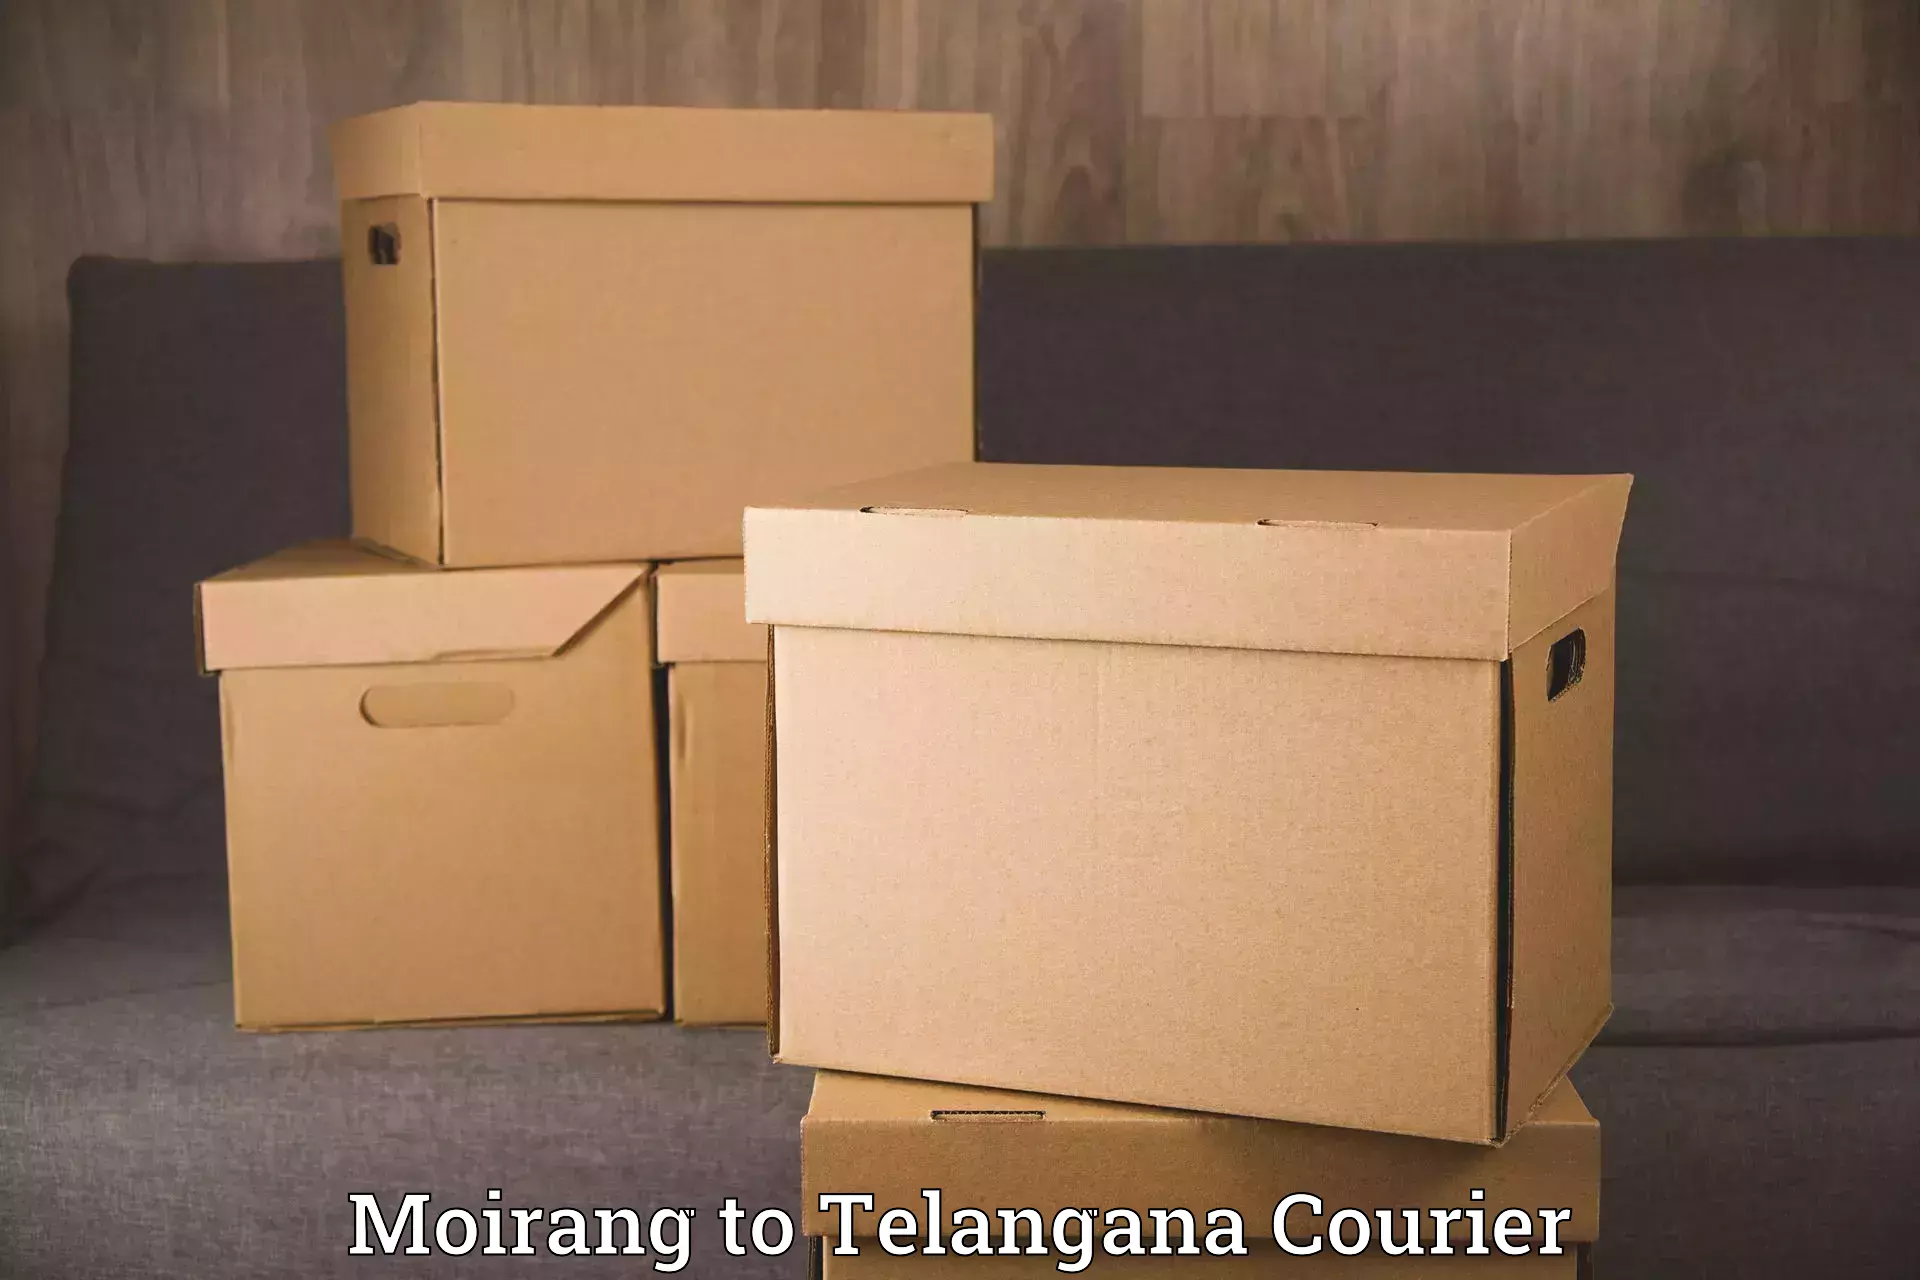 Household moving experts Moirang to Telangana